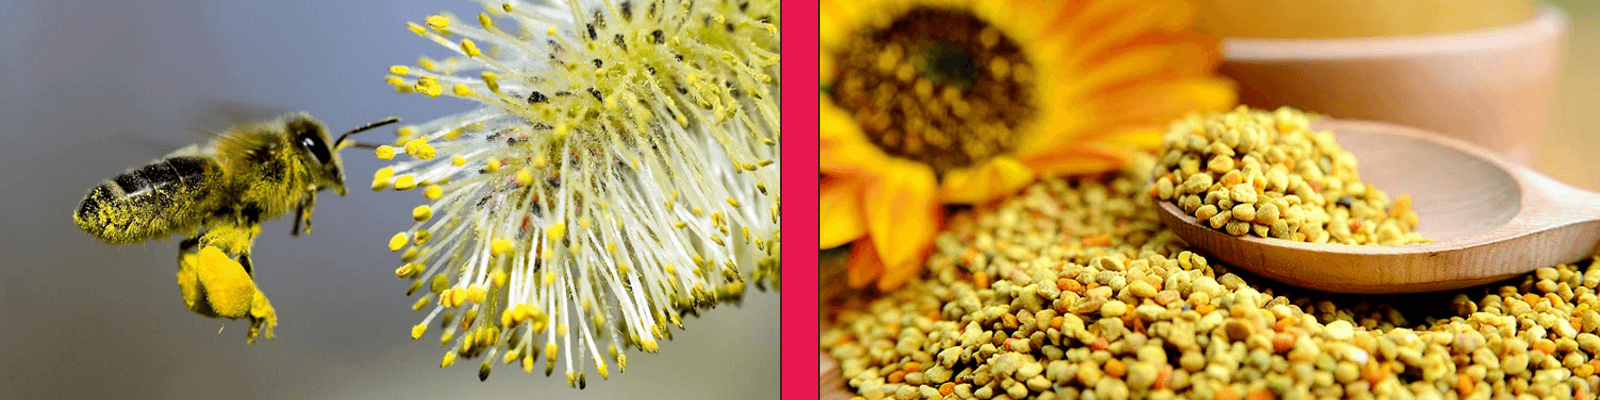 benefits of bee pollen